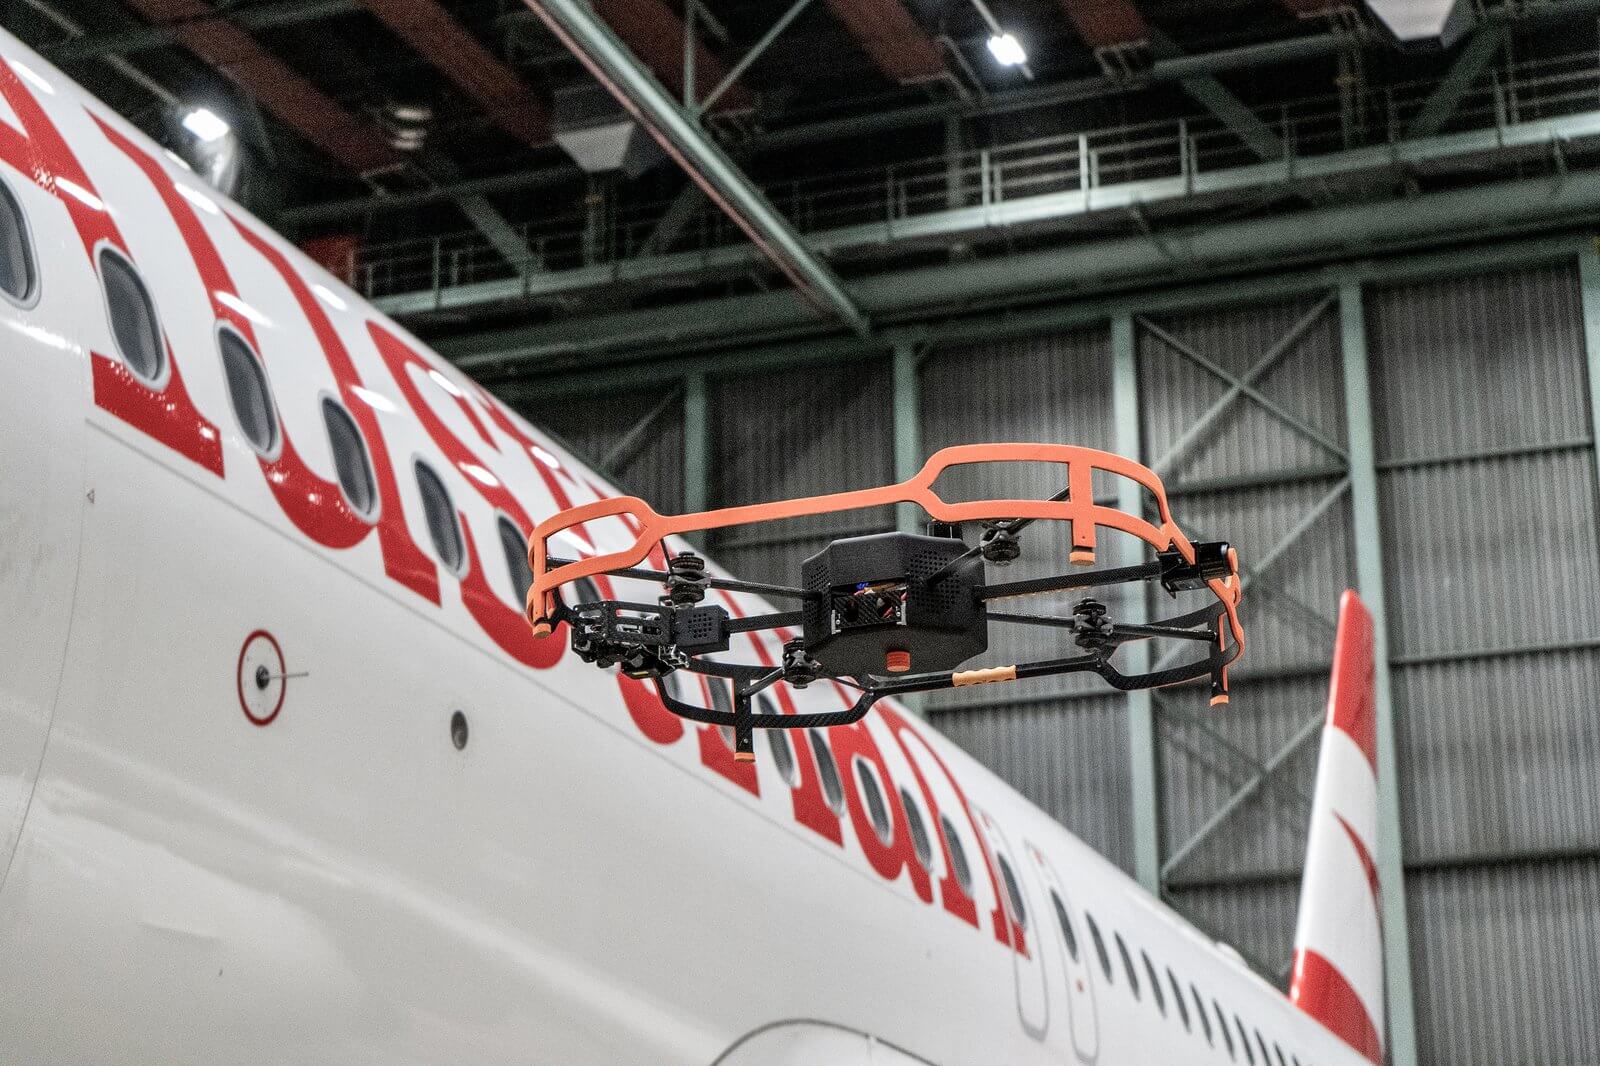 Avusturya Hava Yolları uçak kontrollerini otonom drone ile gerçekleştirecek